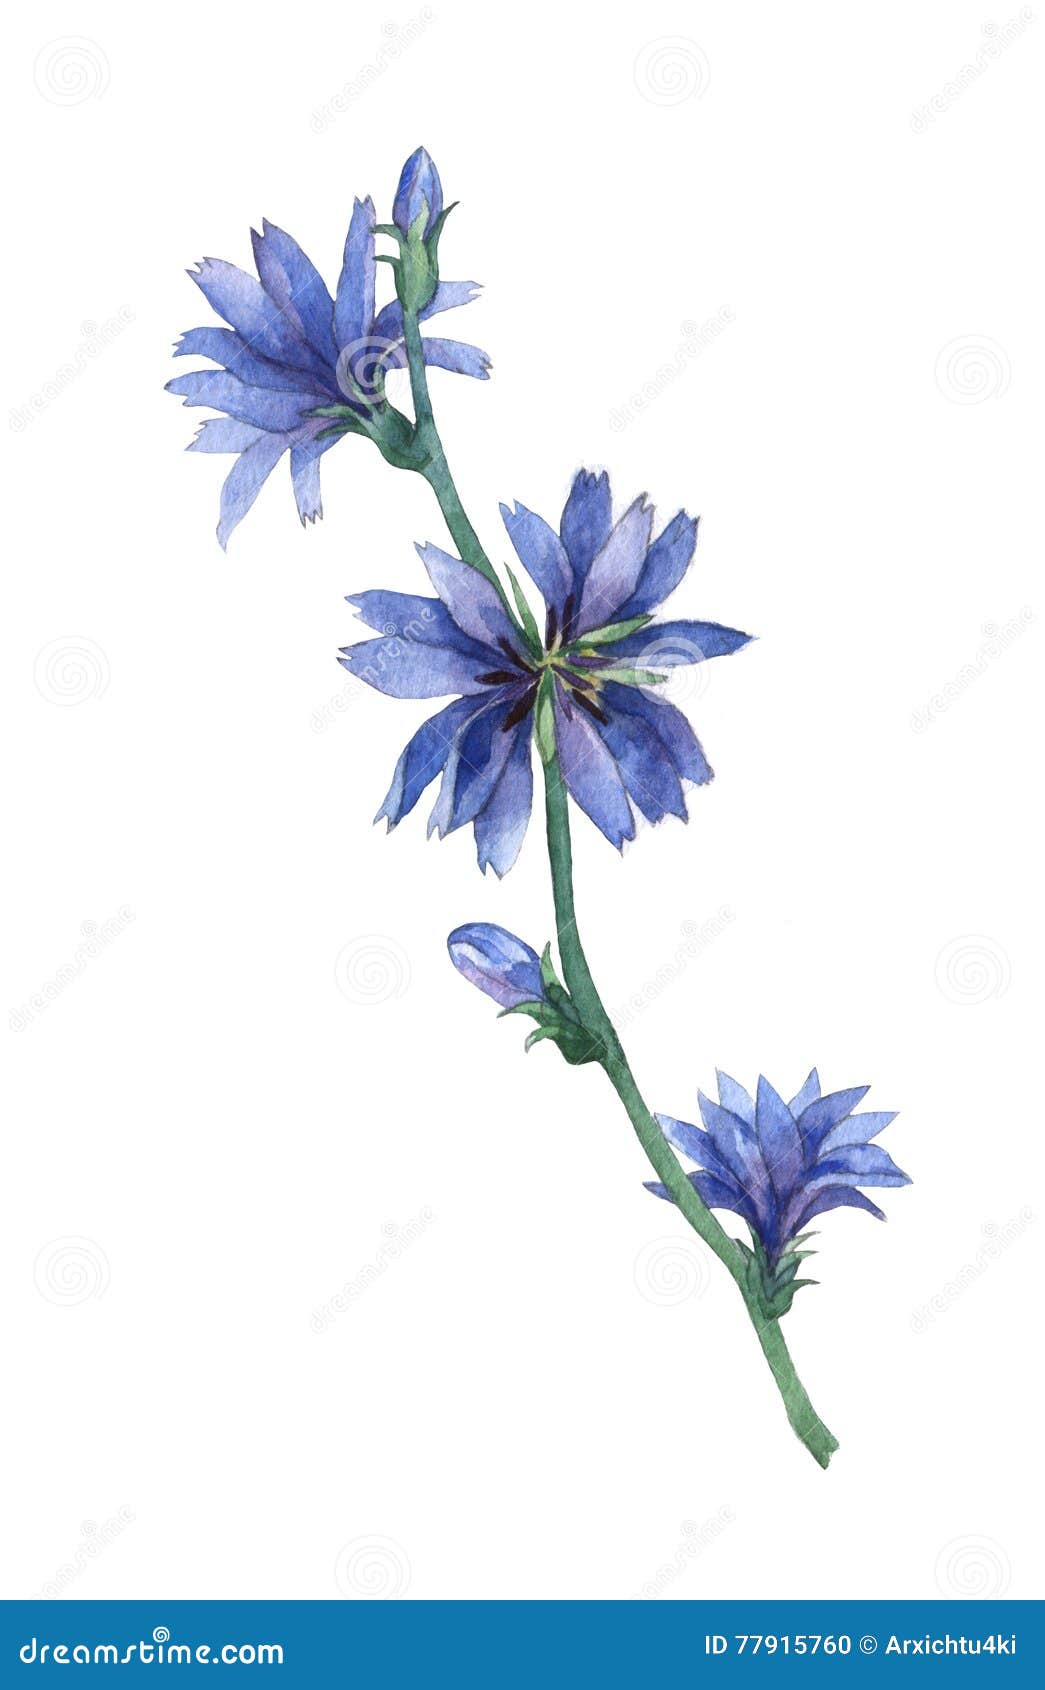 美丽的蓝色菊苣花 库存照片. 图片 包括有 玻色子, 花瓣, 词根, 墙纸, 苦苣生茯, 开花, 工厂 - 188489068